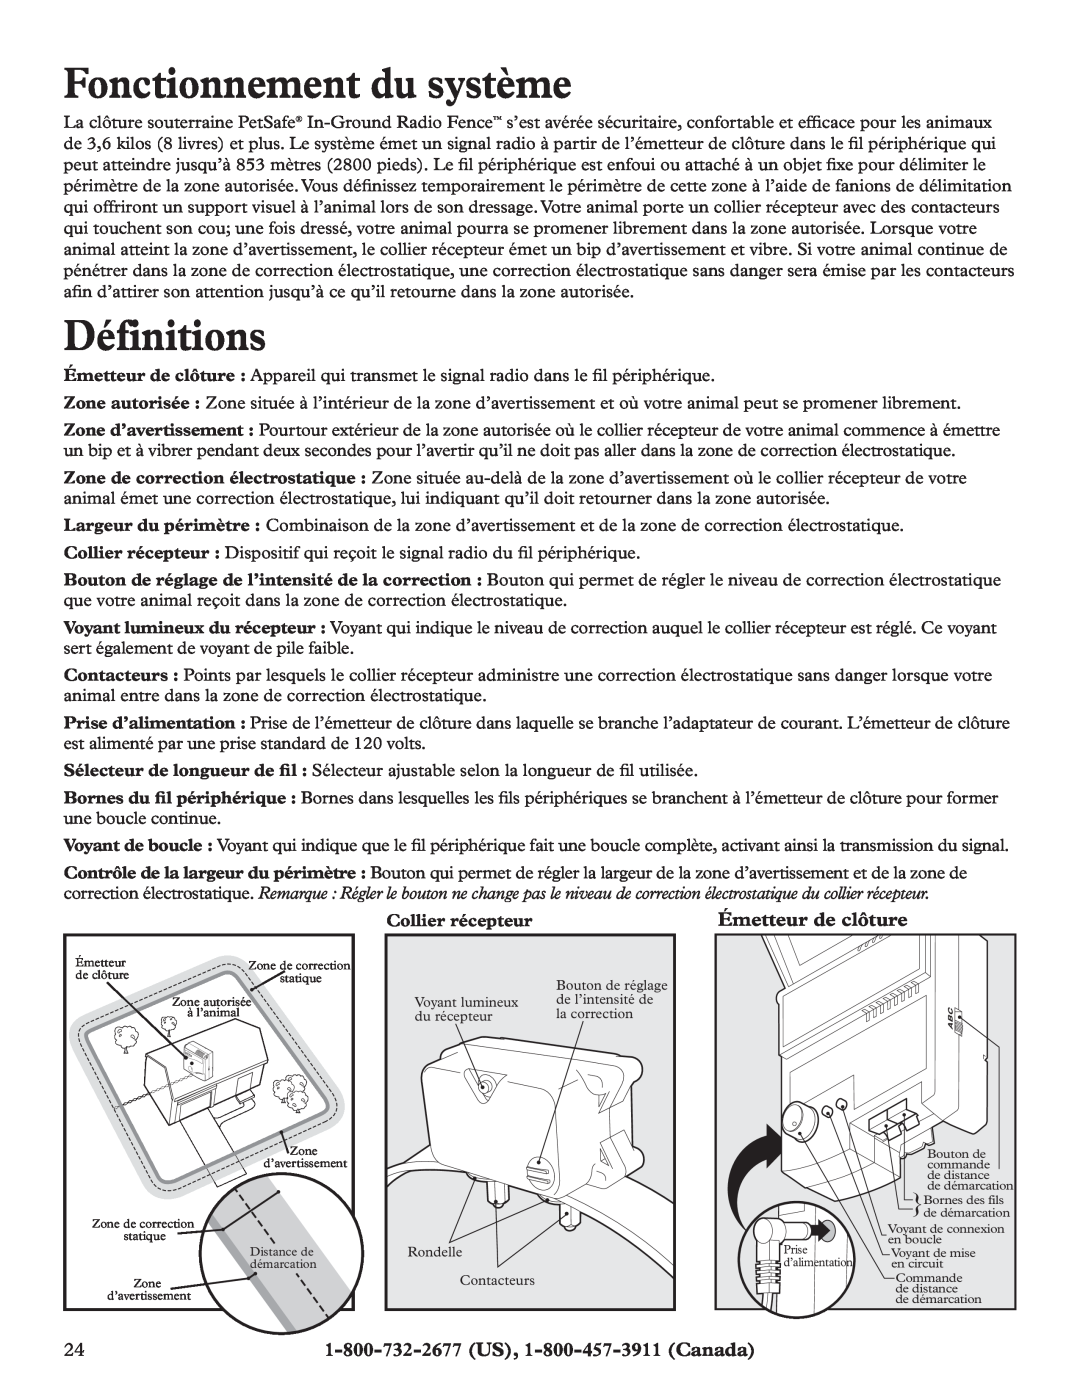 Petsafe RFA-200 manual Fonctionnement du système, Définitions, Émetteur de clôture, Collier récepteur 